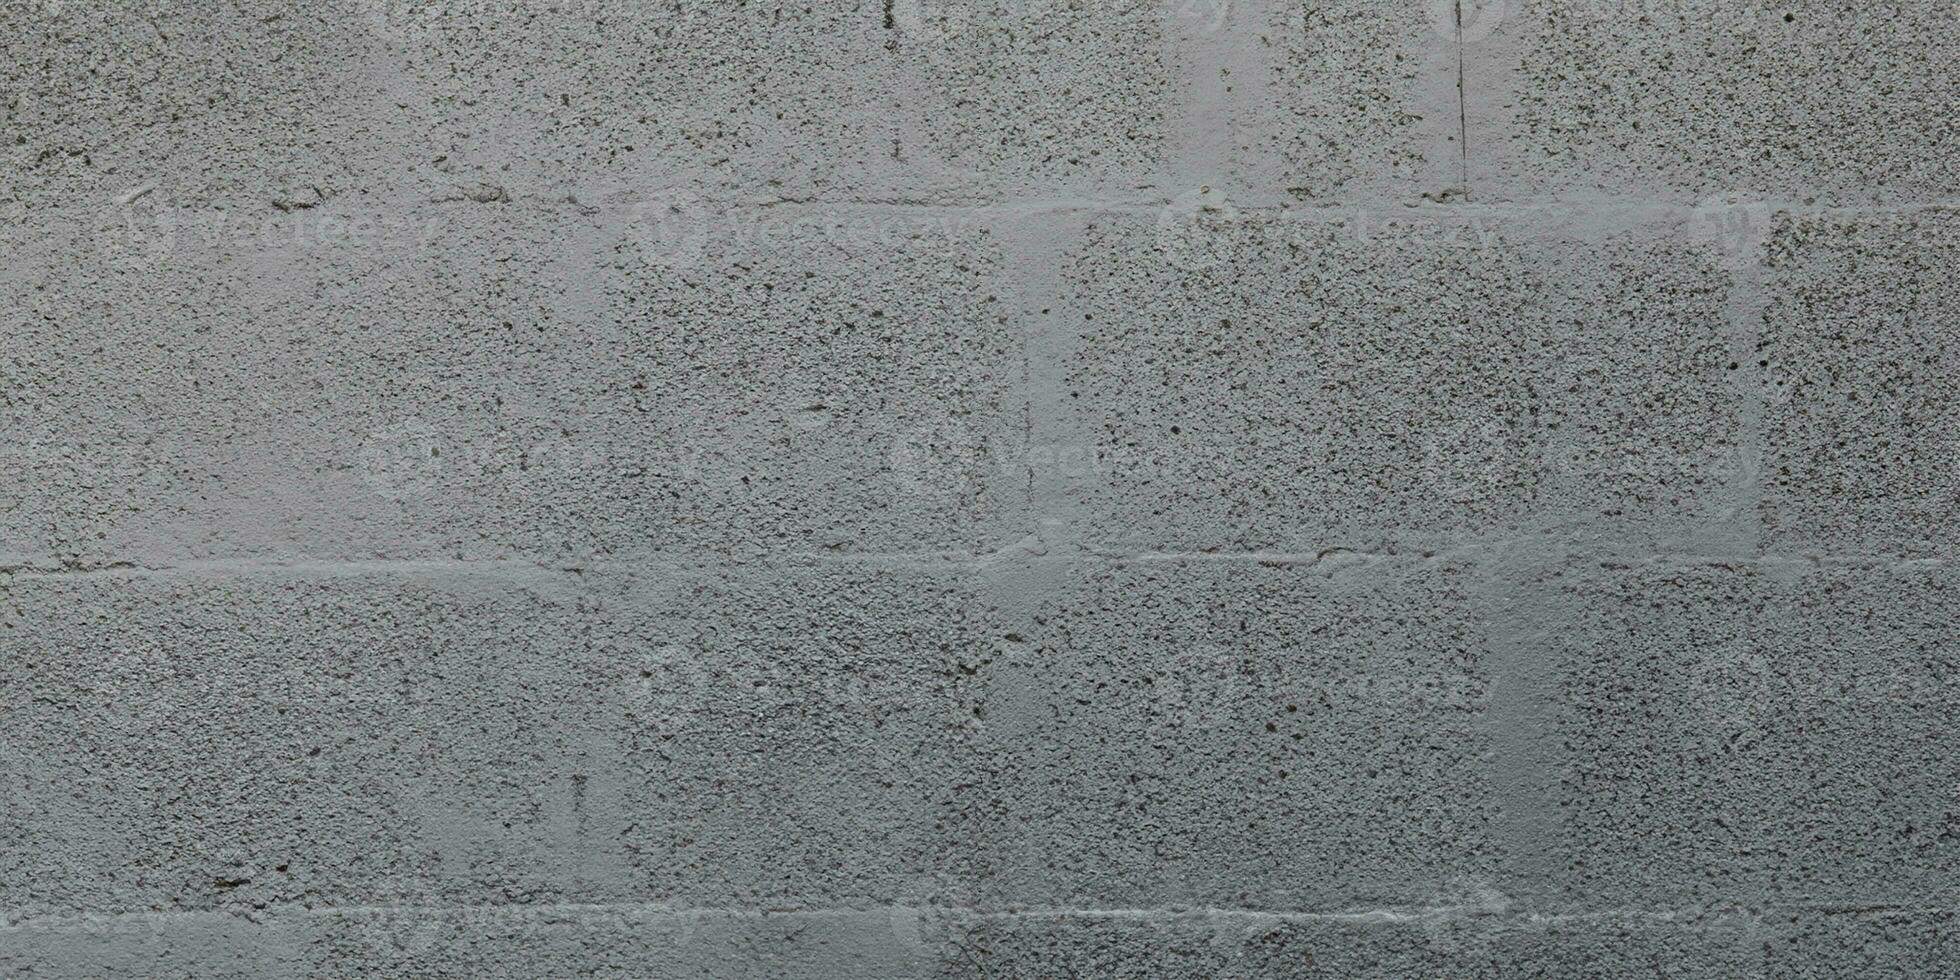 grau Betonblock Backstein Mauer zum Hintergrund grau Blockarbeit Textur foto